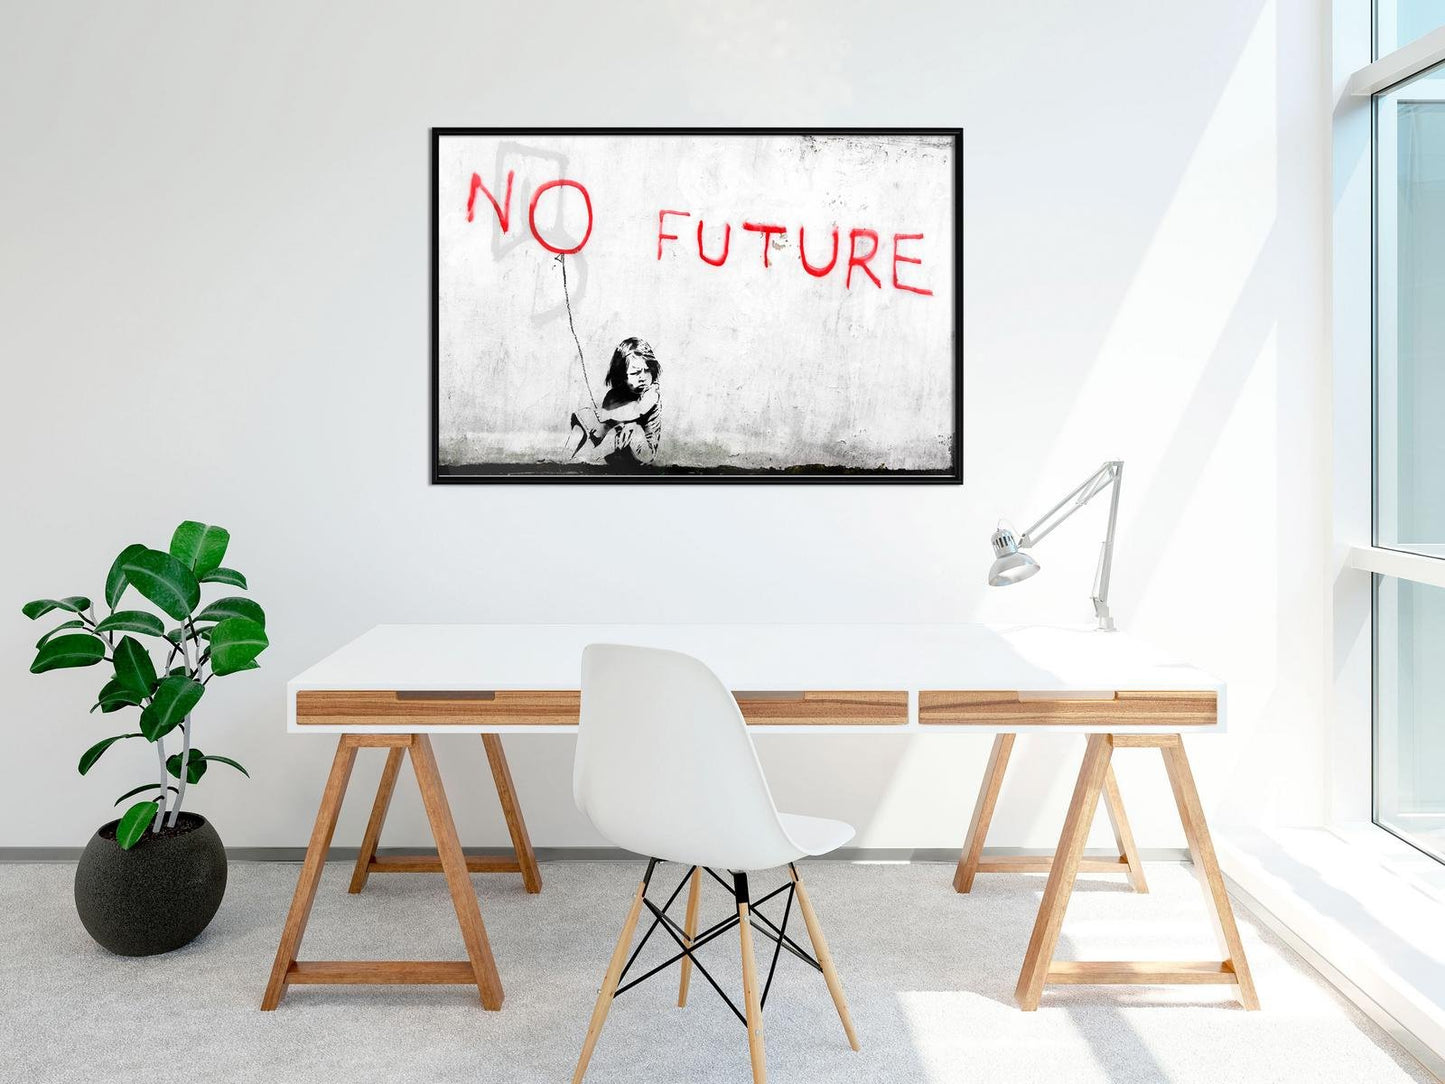 Banksy: No Future